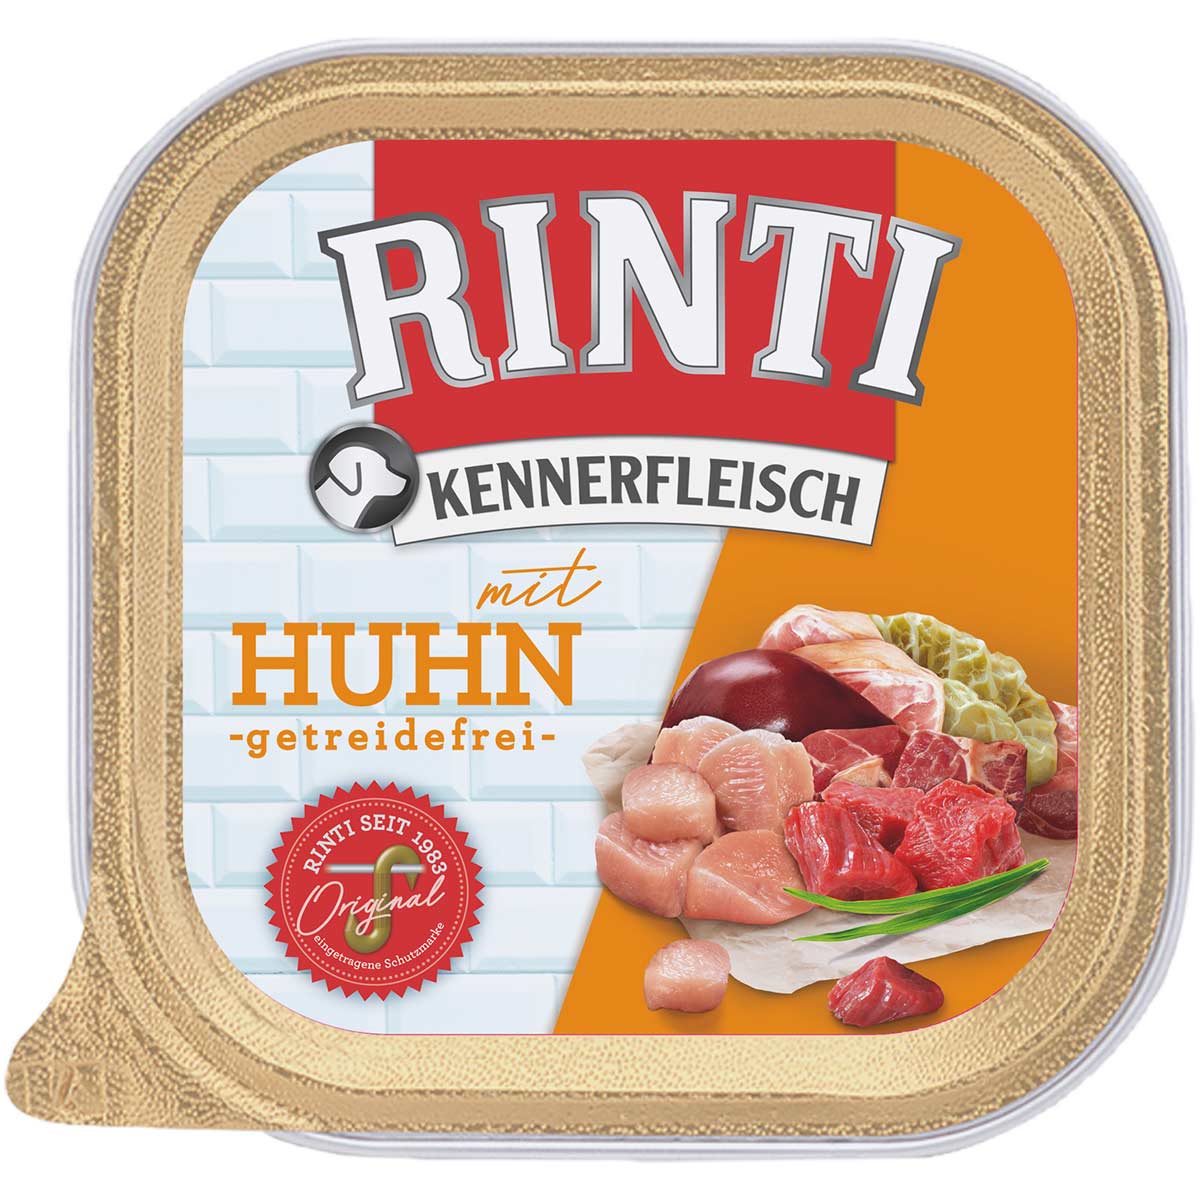 Rinti Kennerfleisch mit Huhn 18x300g von Rinti